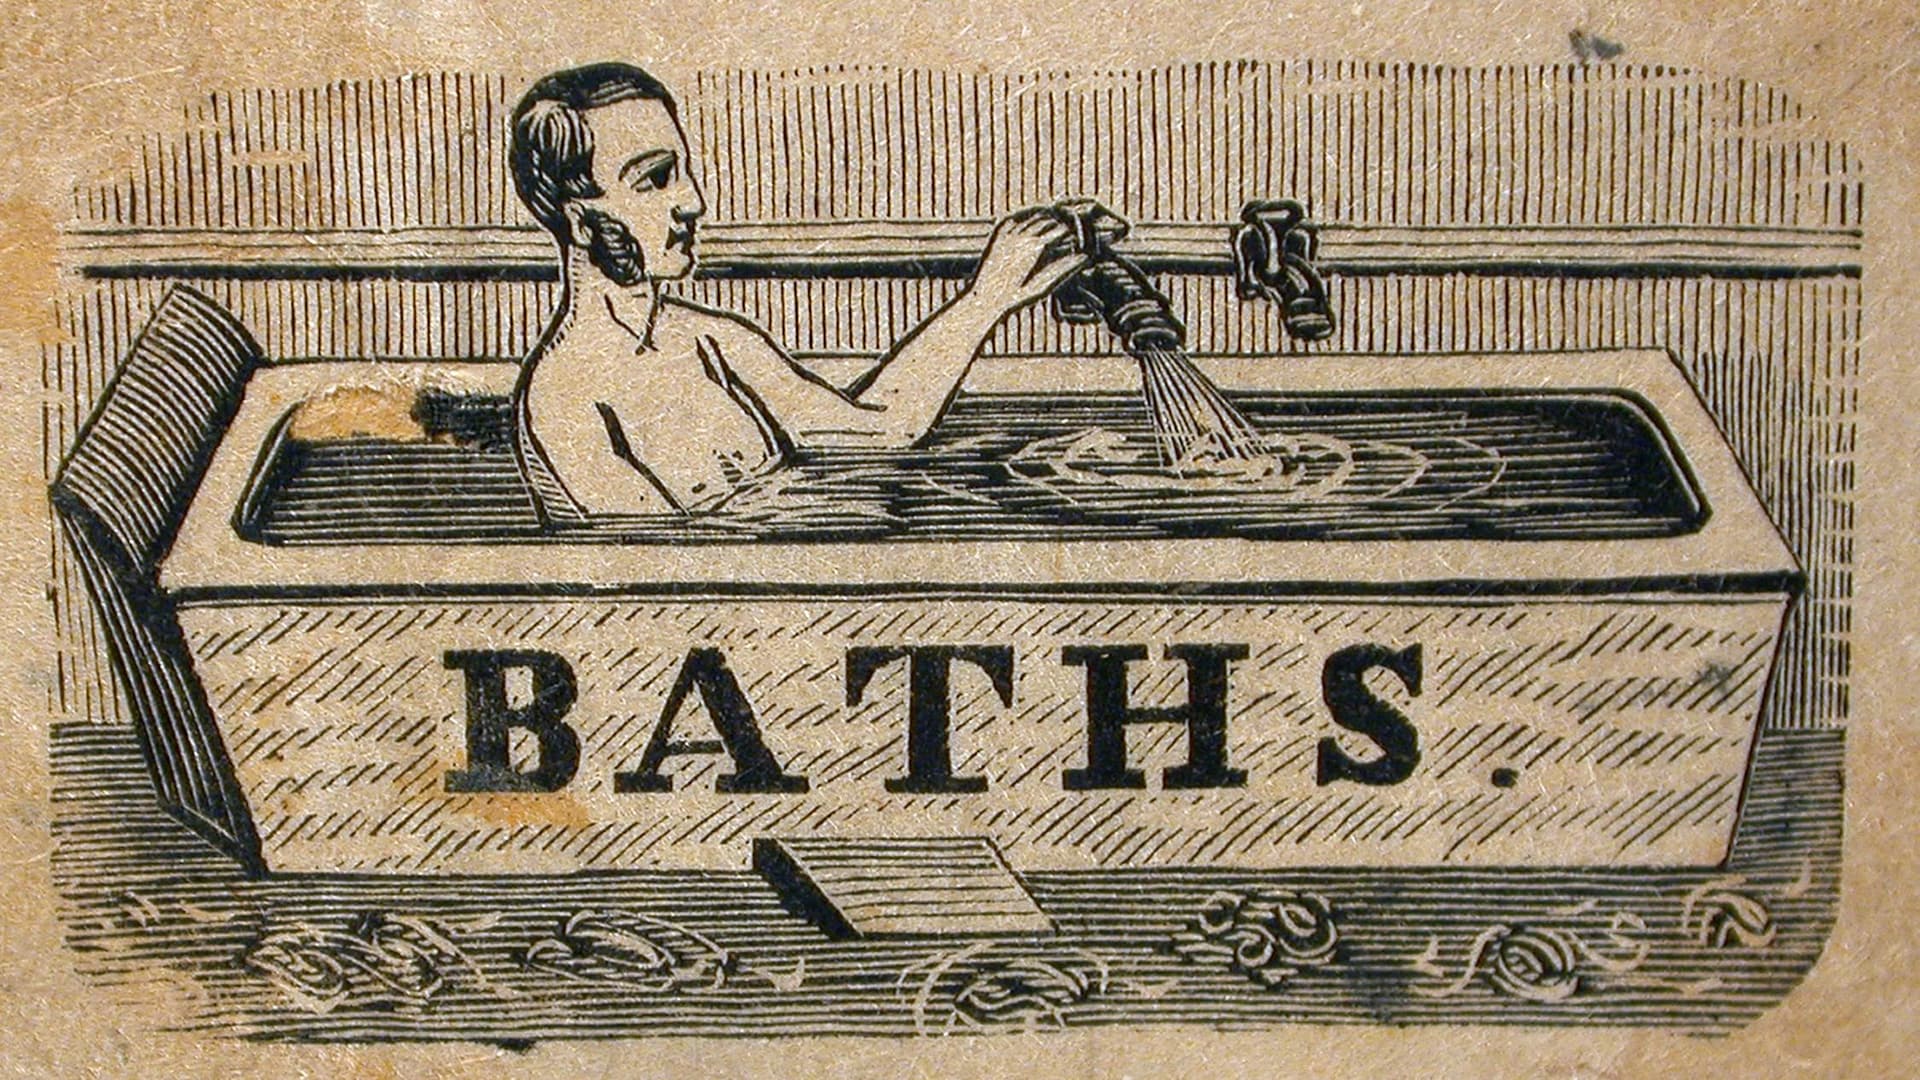 Un homme immergé jusqu'au torse actionne le robinet d'un bain public dans une gravure tirée d'un magazine du 19e siècle.